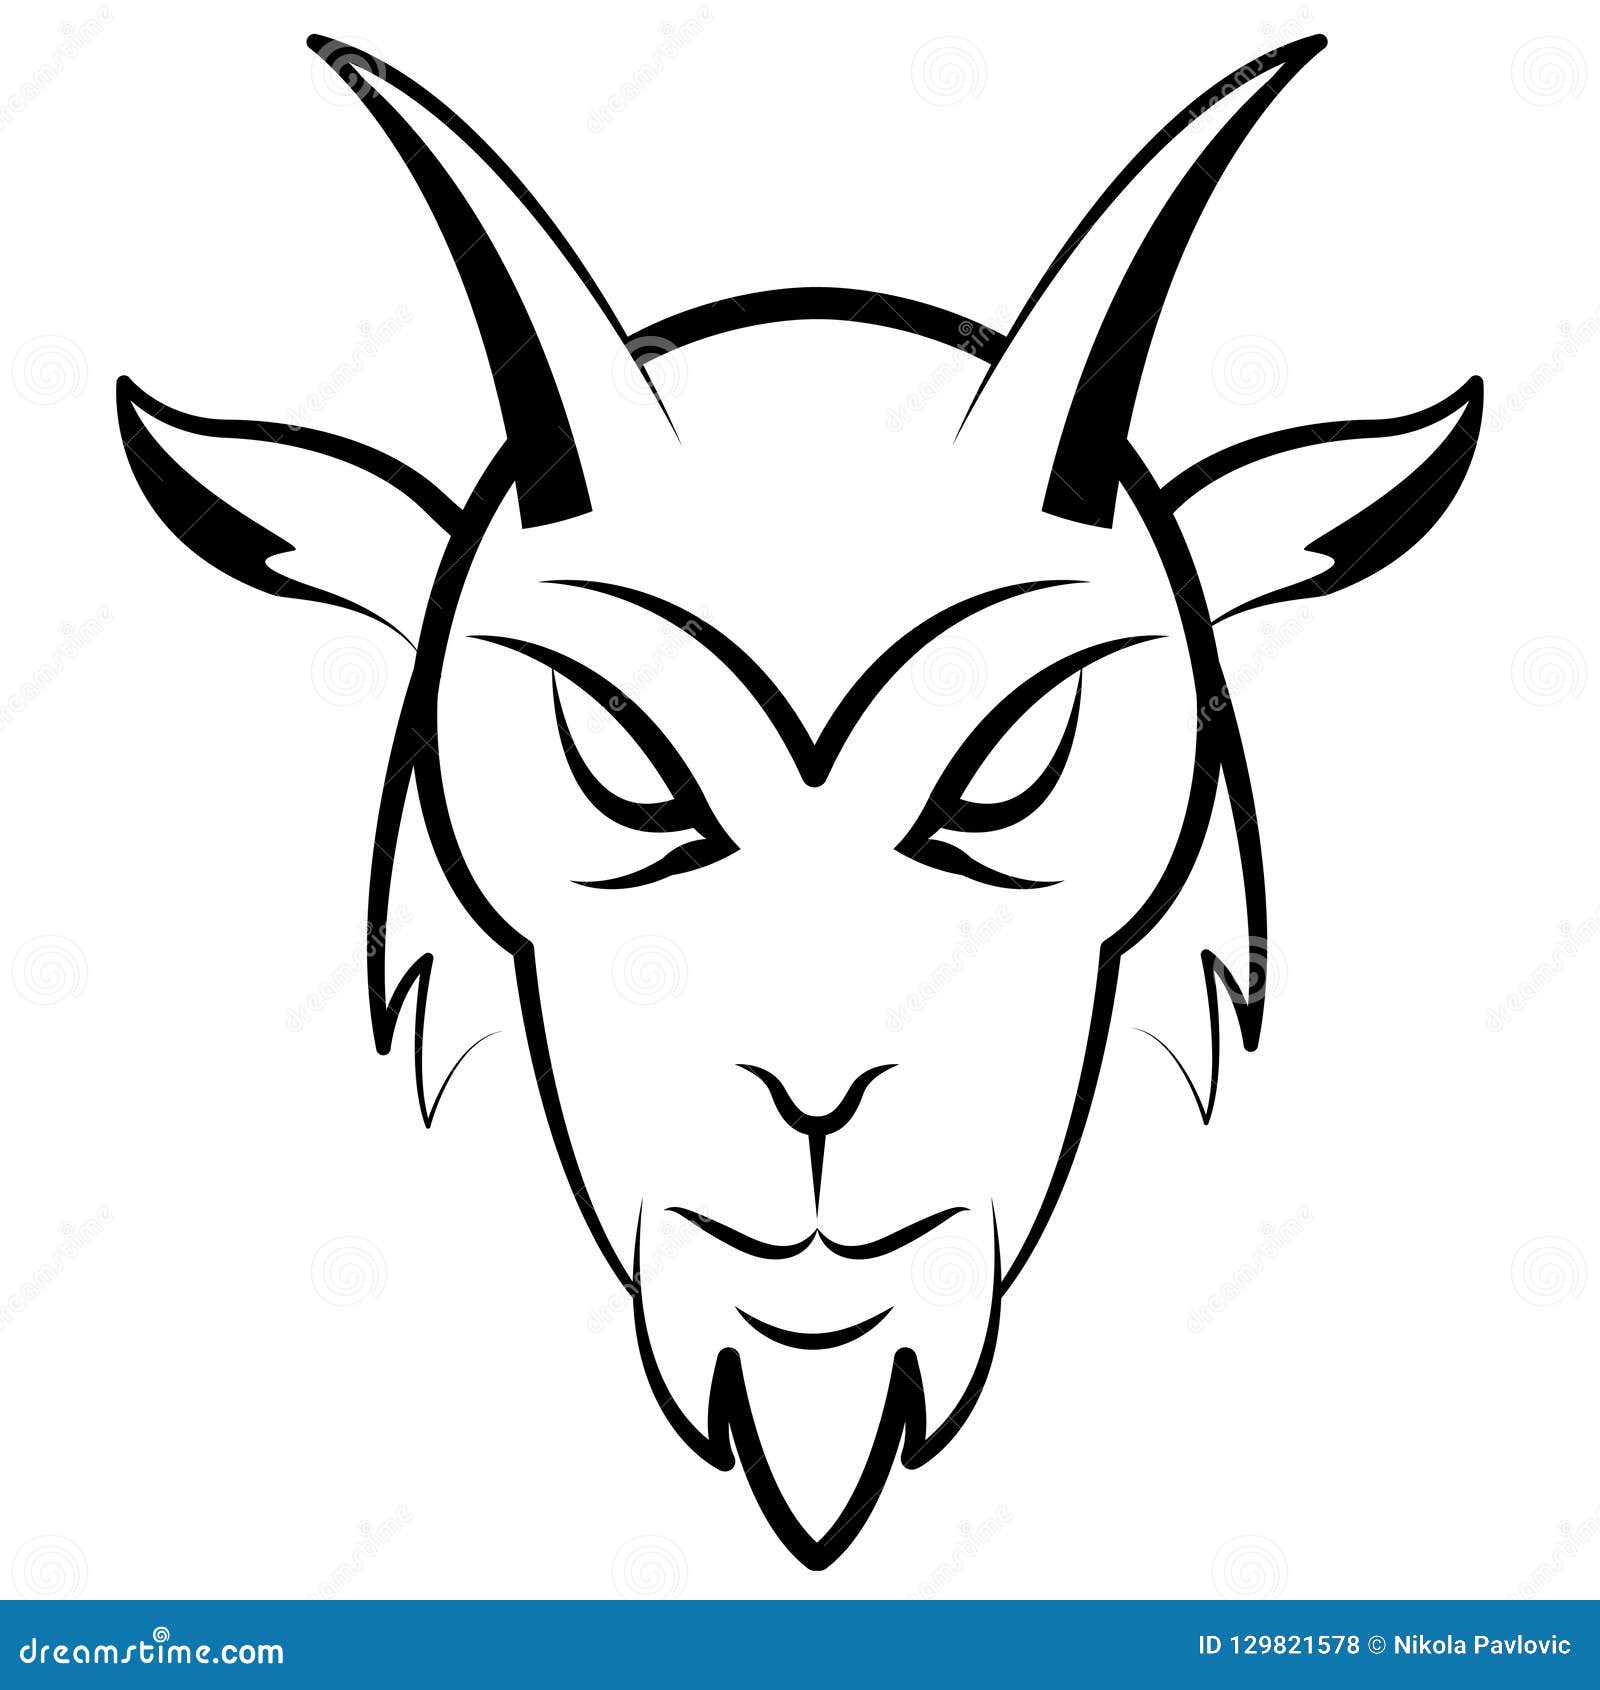 Как нарисовать голову козы